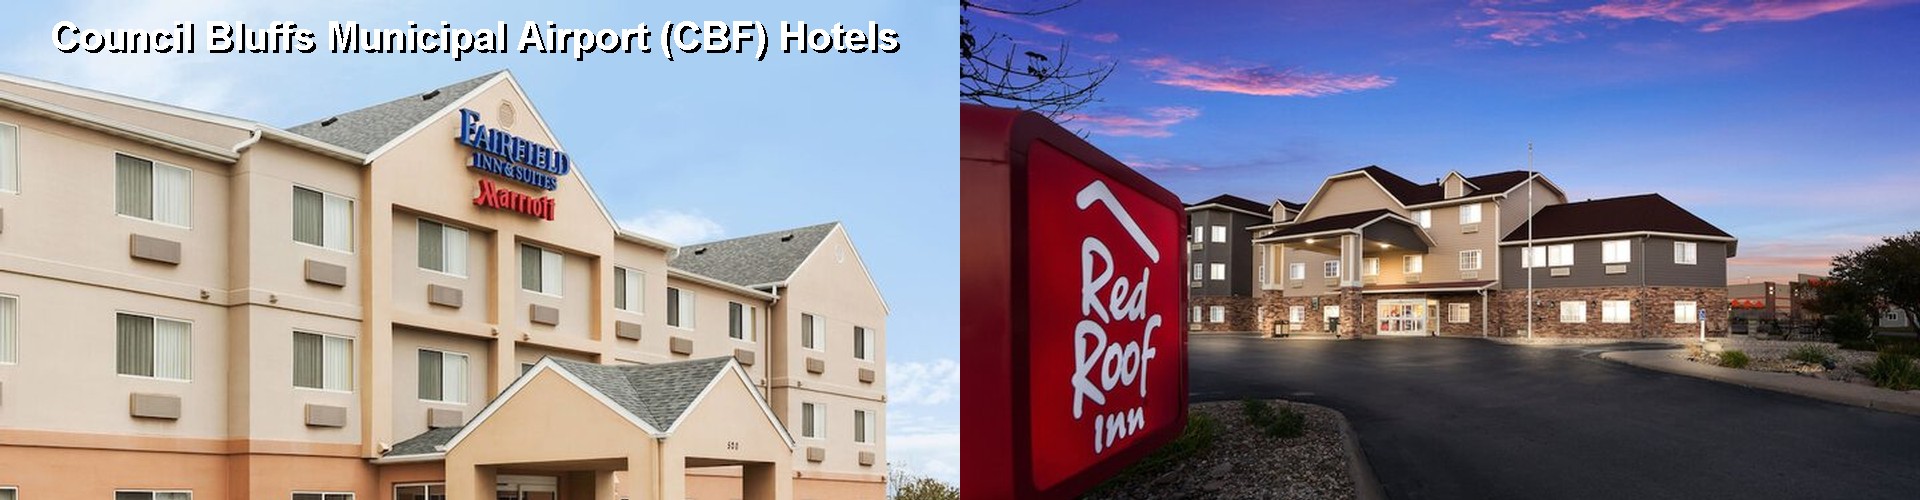 3 Best Hotels near Council Bluffs Municipal Airport (CBF)